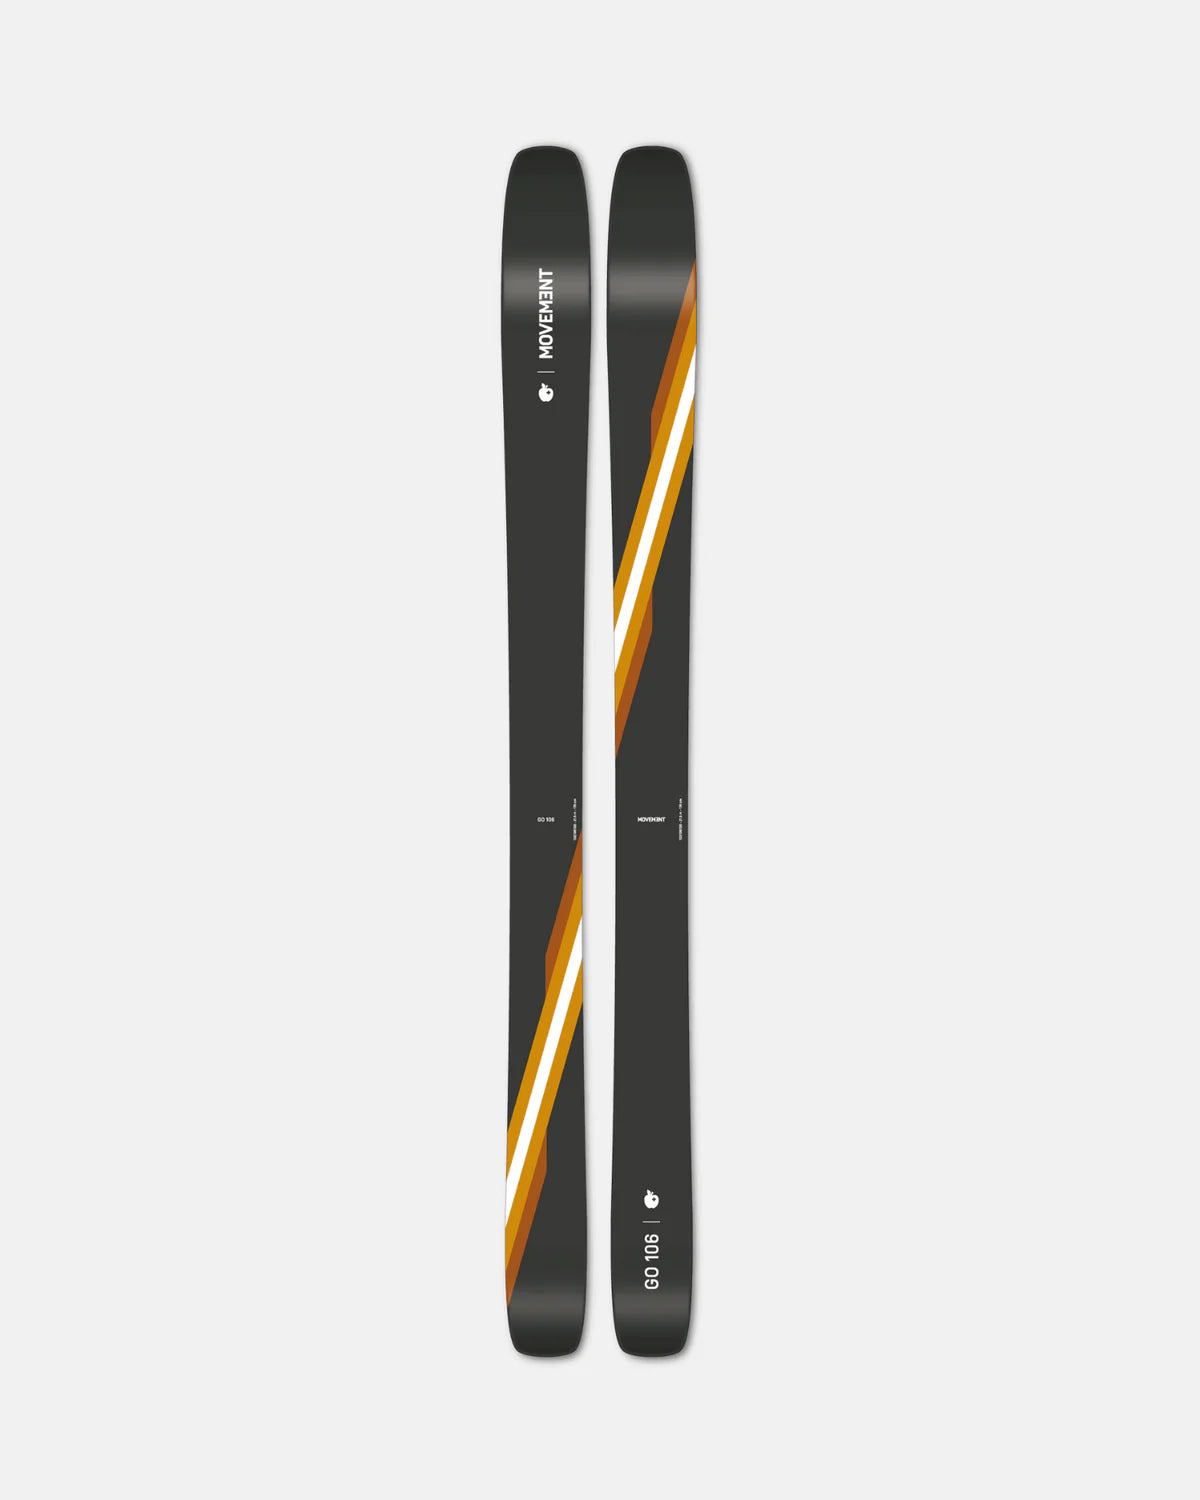 Skis, Powder Skis, Movement, Go 106, Top of skis, Grey Orange and White stripe white background